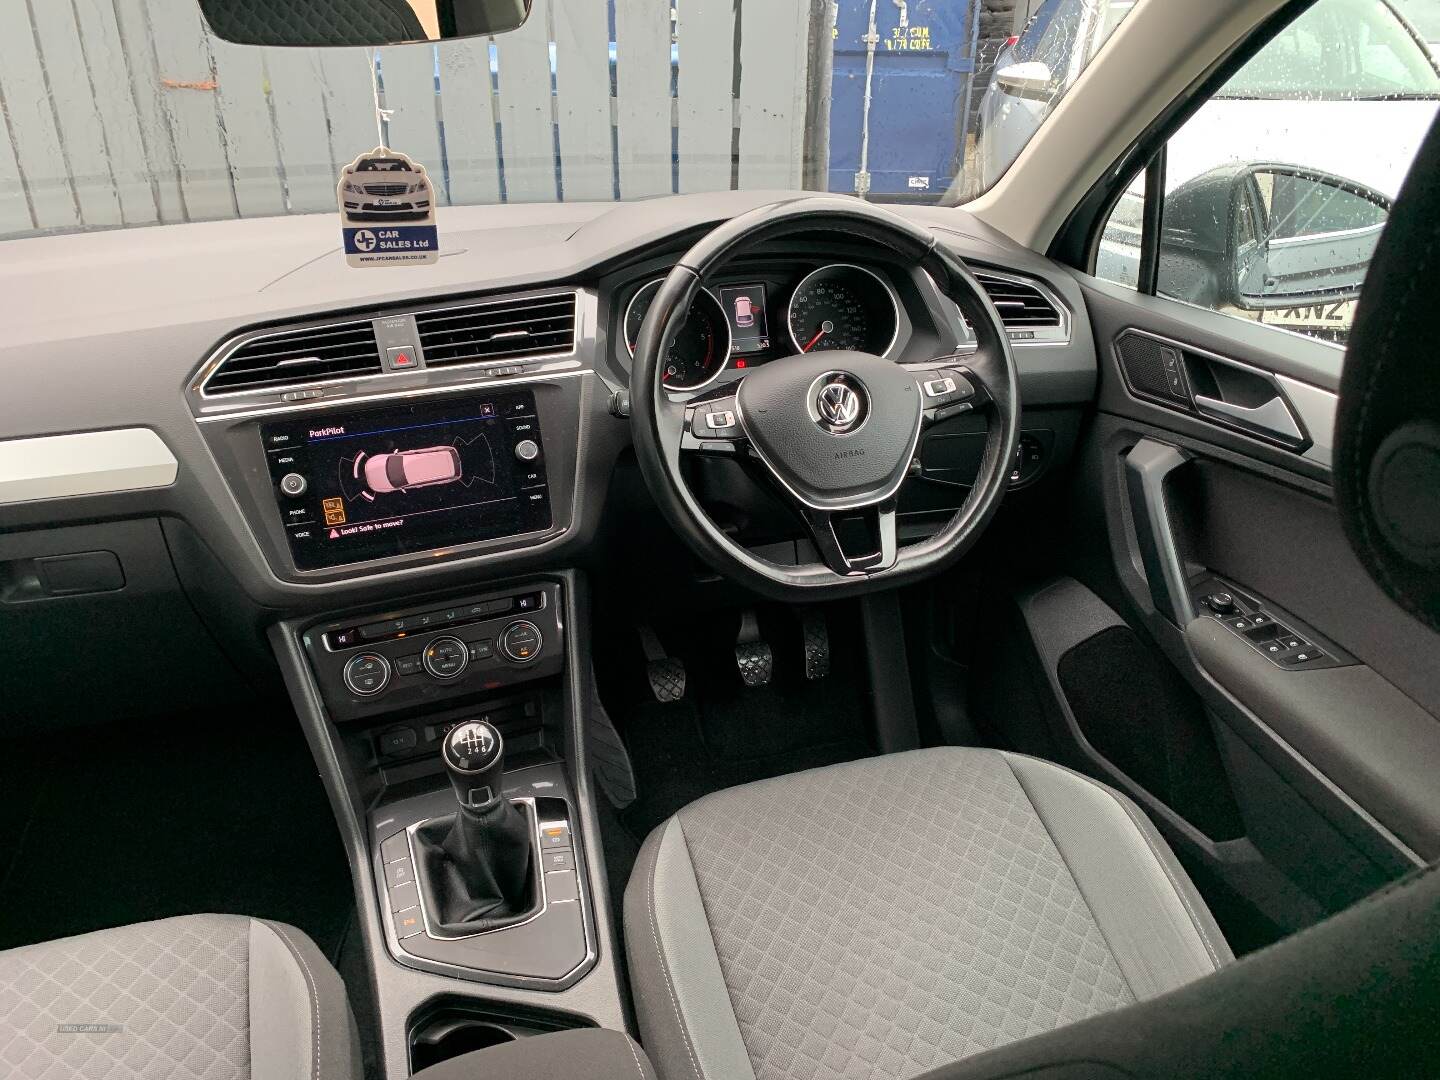 Volkswagen Tiguan DIESEL ESTATE in Antrim